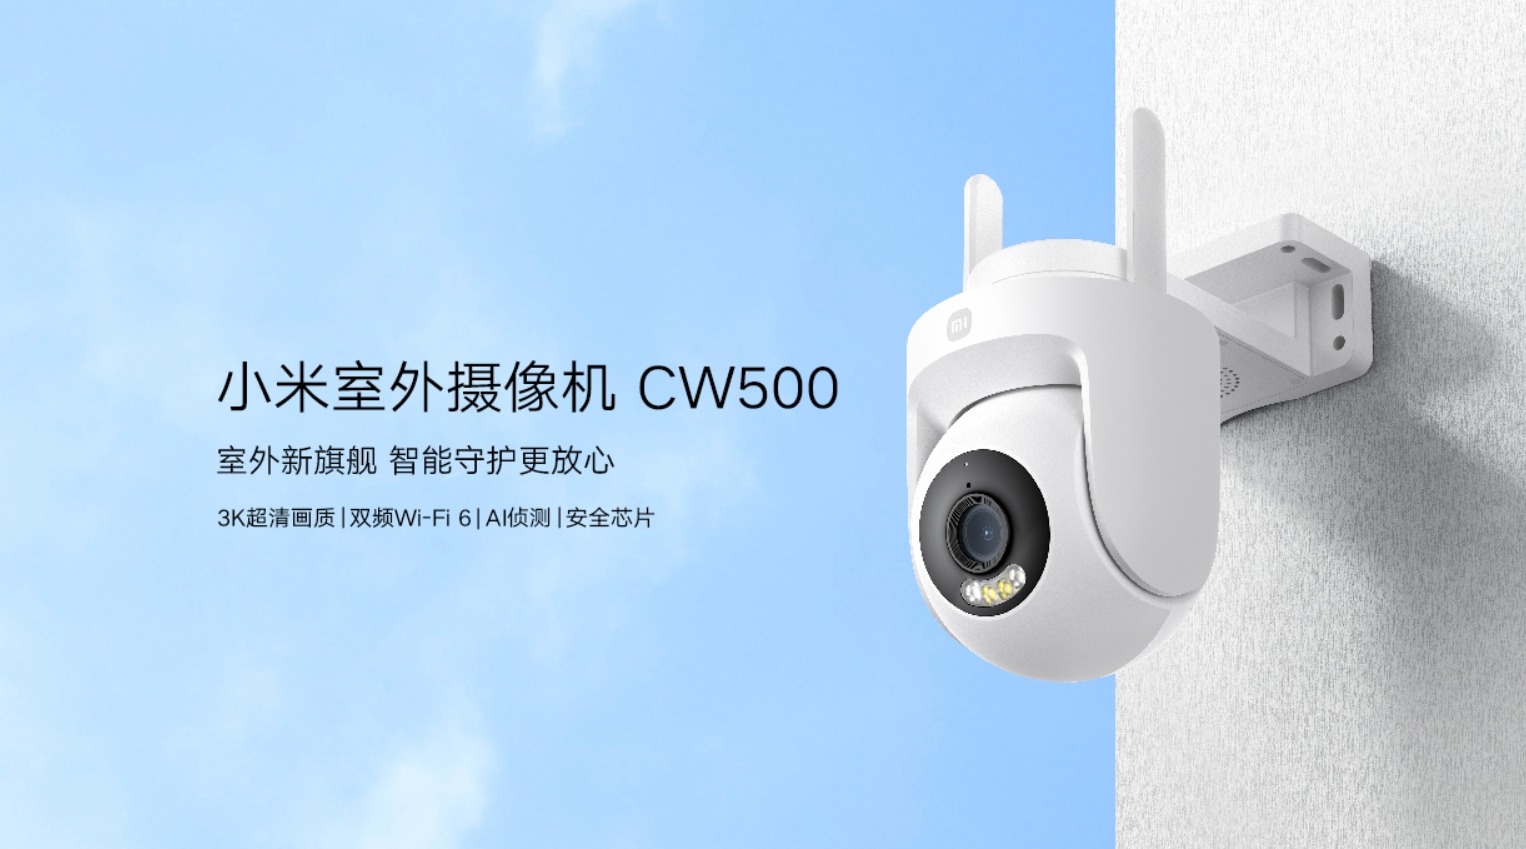 小米户外云台摄像机CW500 Dlingsmart智能可视门铃E6-2